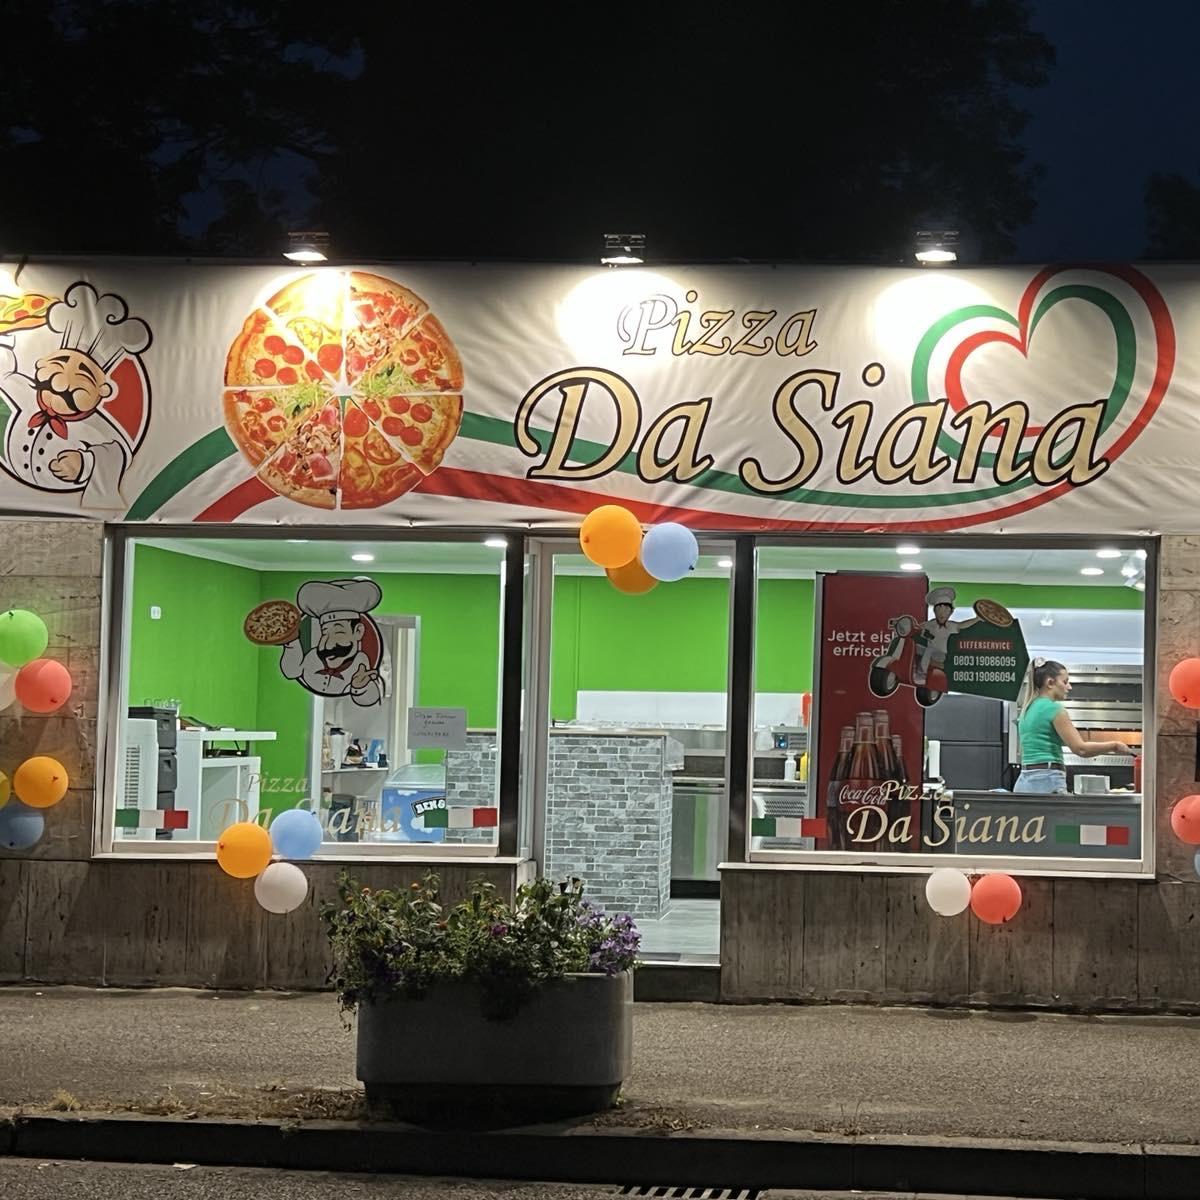 Restaurant "Pizza Da Siana" in Kolbermoor